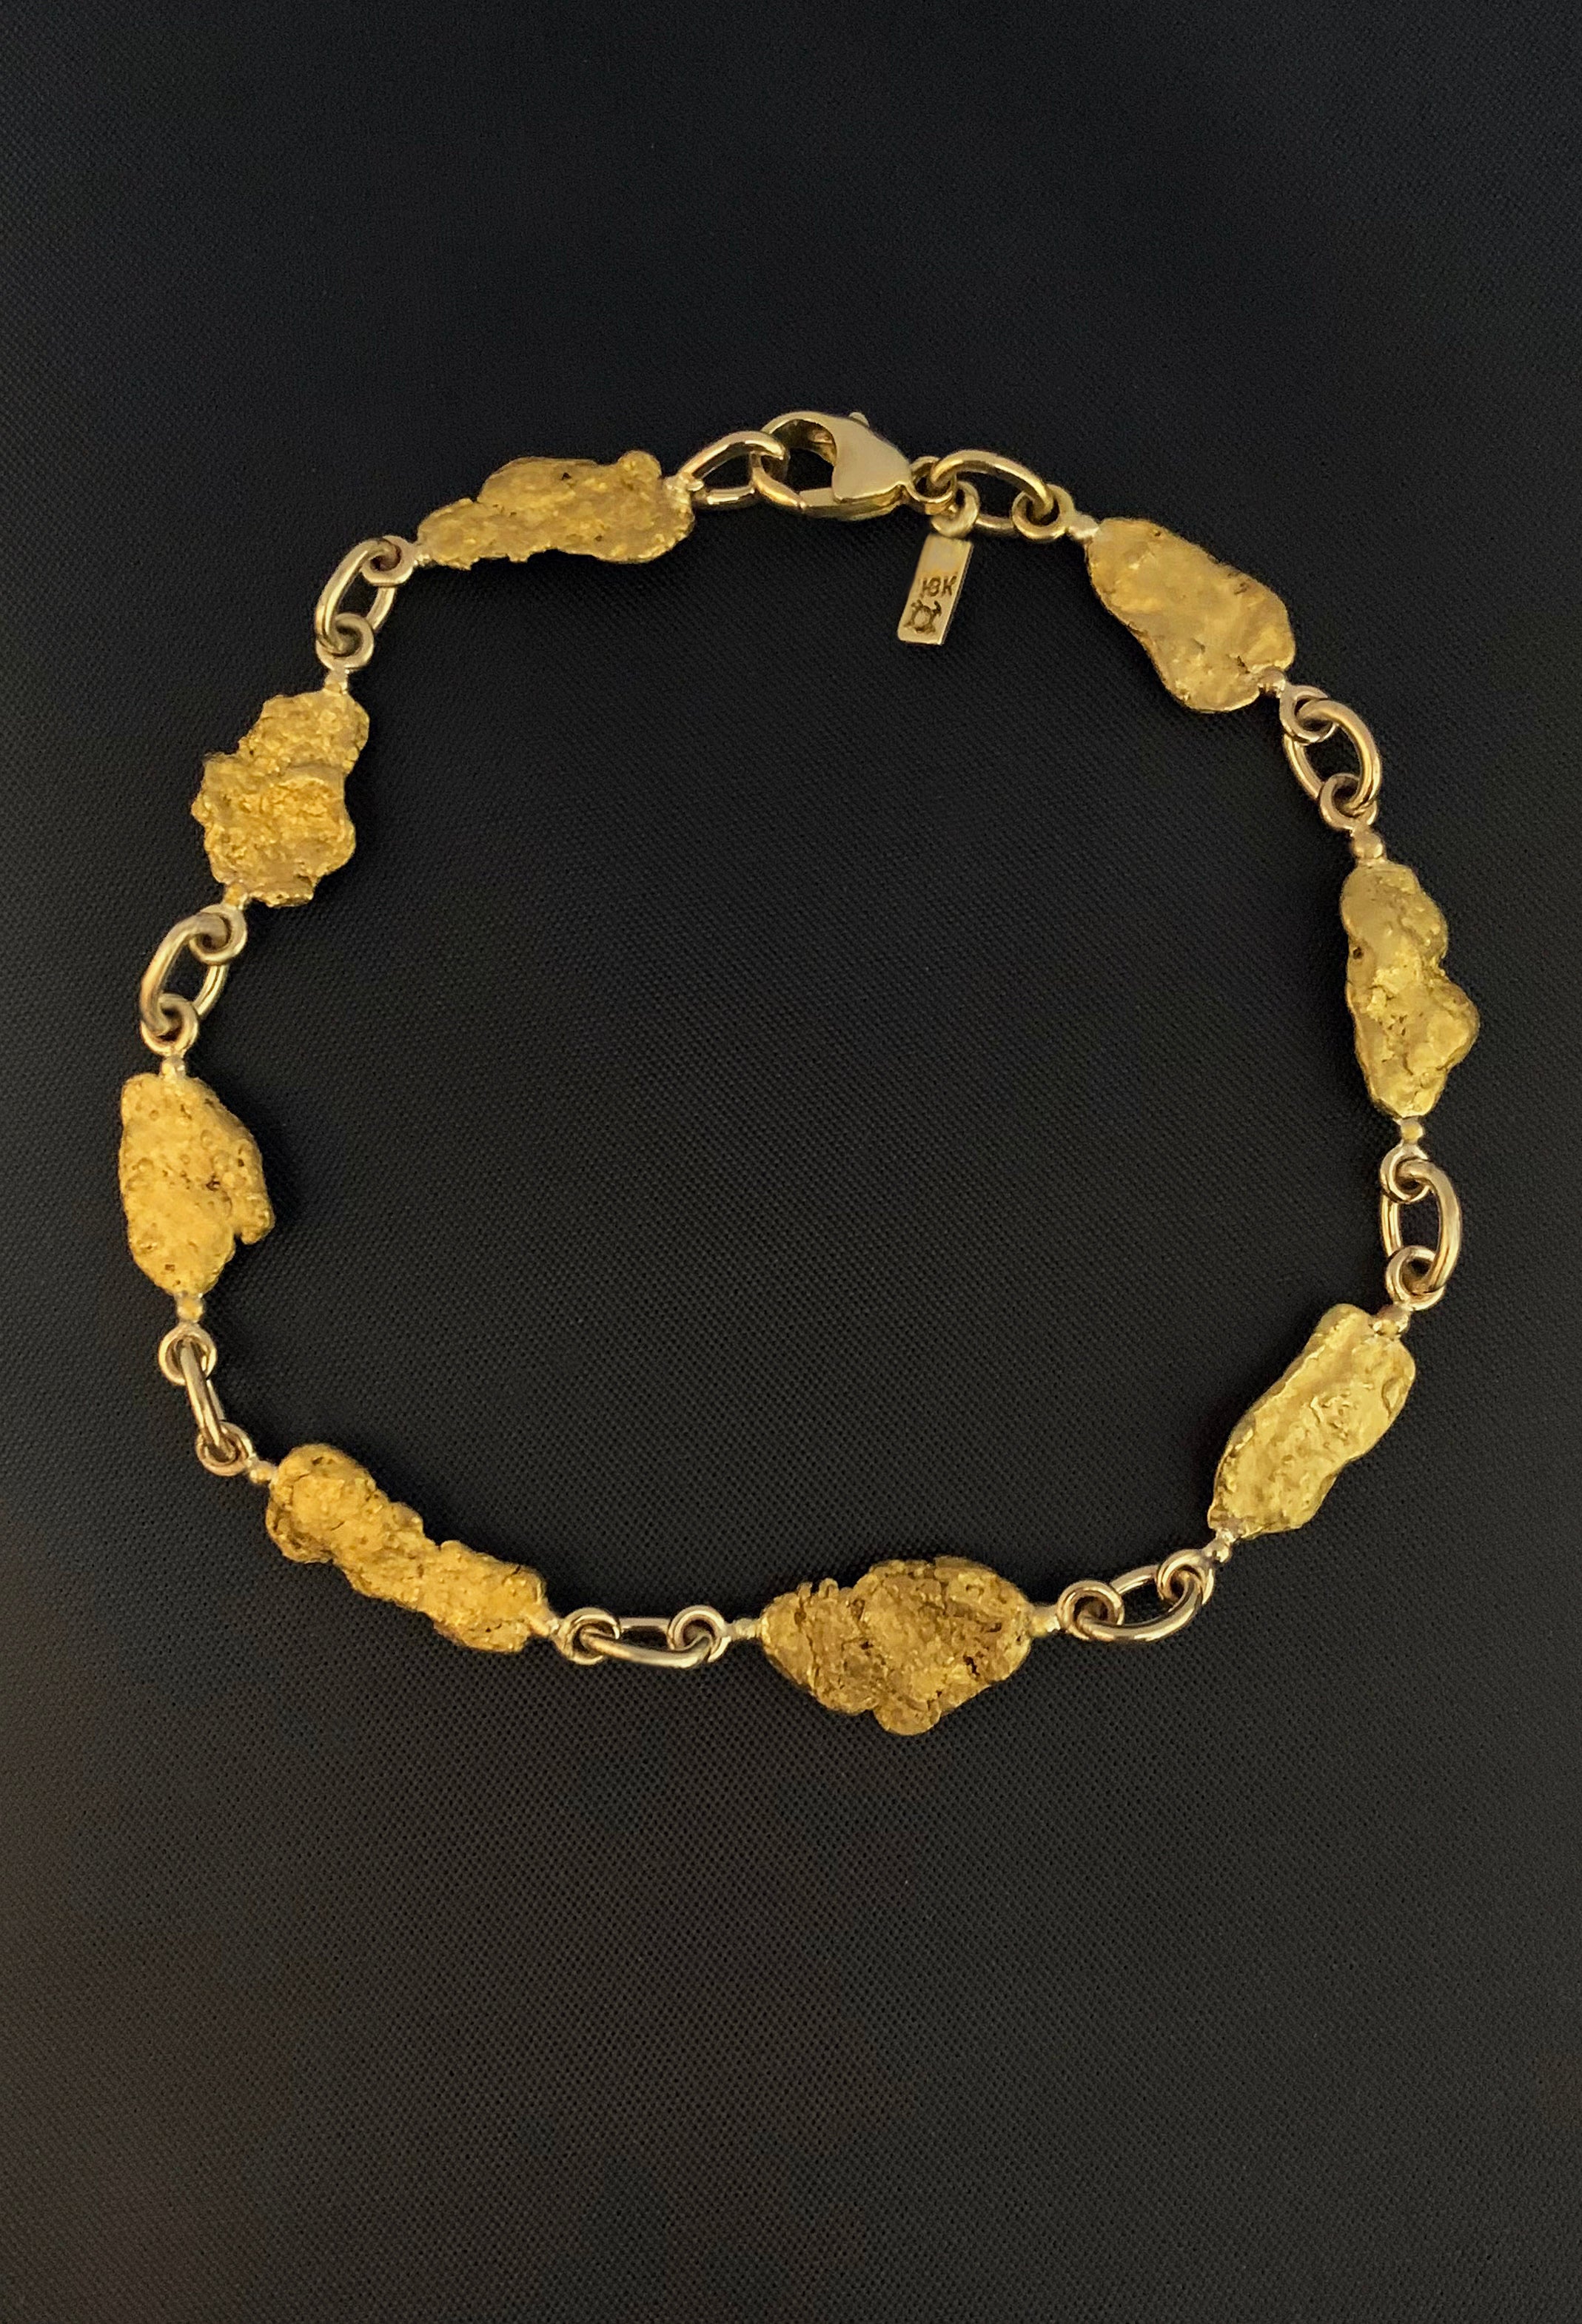 Placer Gold Design - Natural Gold Nugget Bracelet